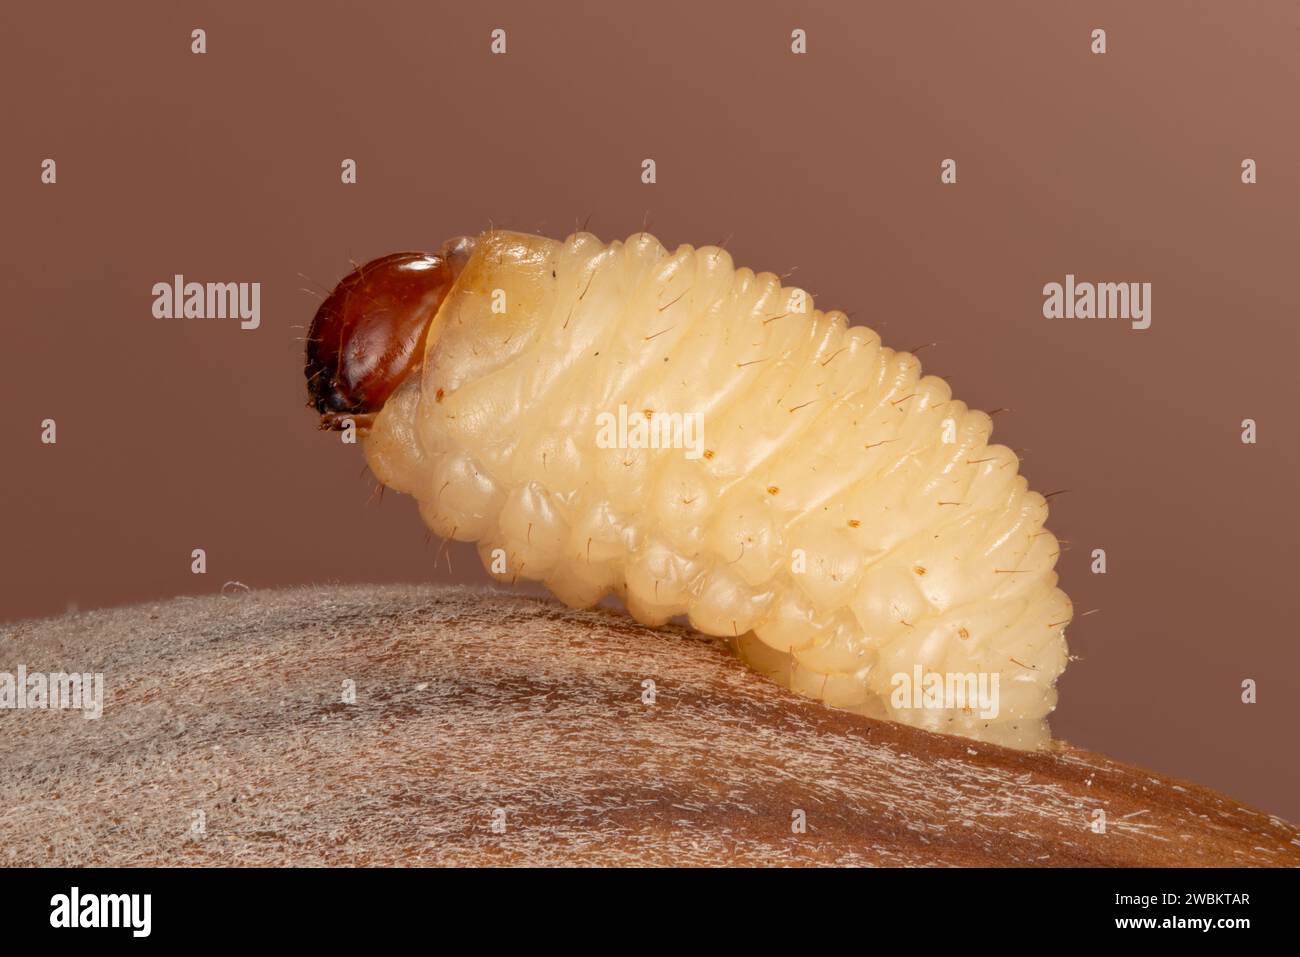 Ausgewachsene Larve des Haselnussbohrers Curculio nucum verlässt Nuss, Larve des Haselnussbohrers schlüpft aus HaselnussCurculio nucum larva hatches Foto Stock